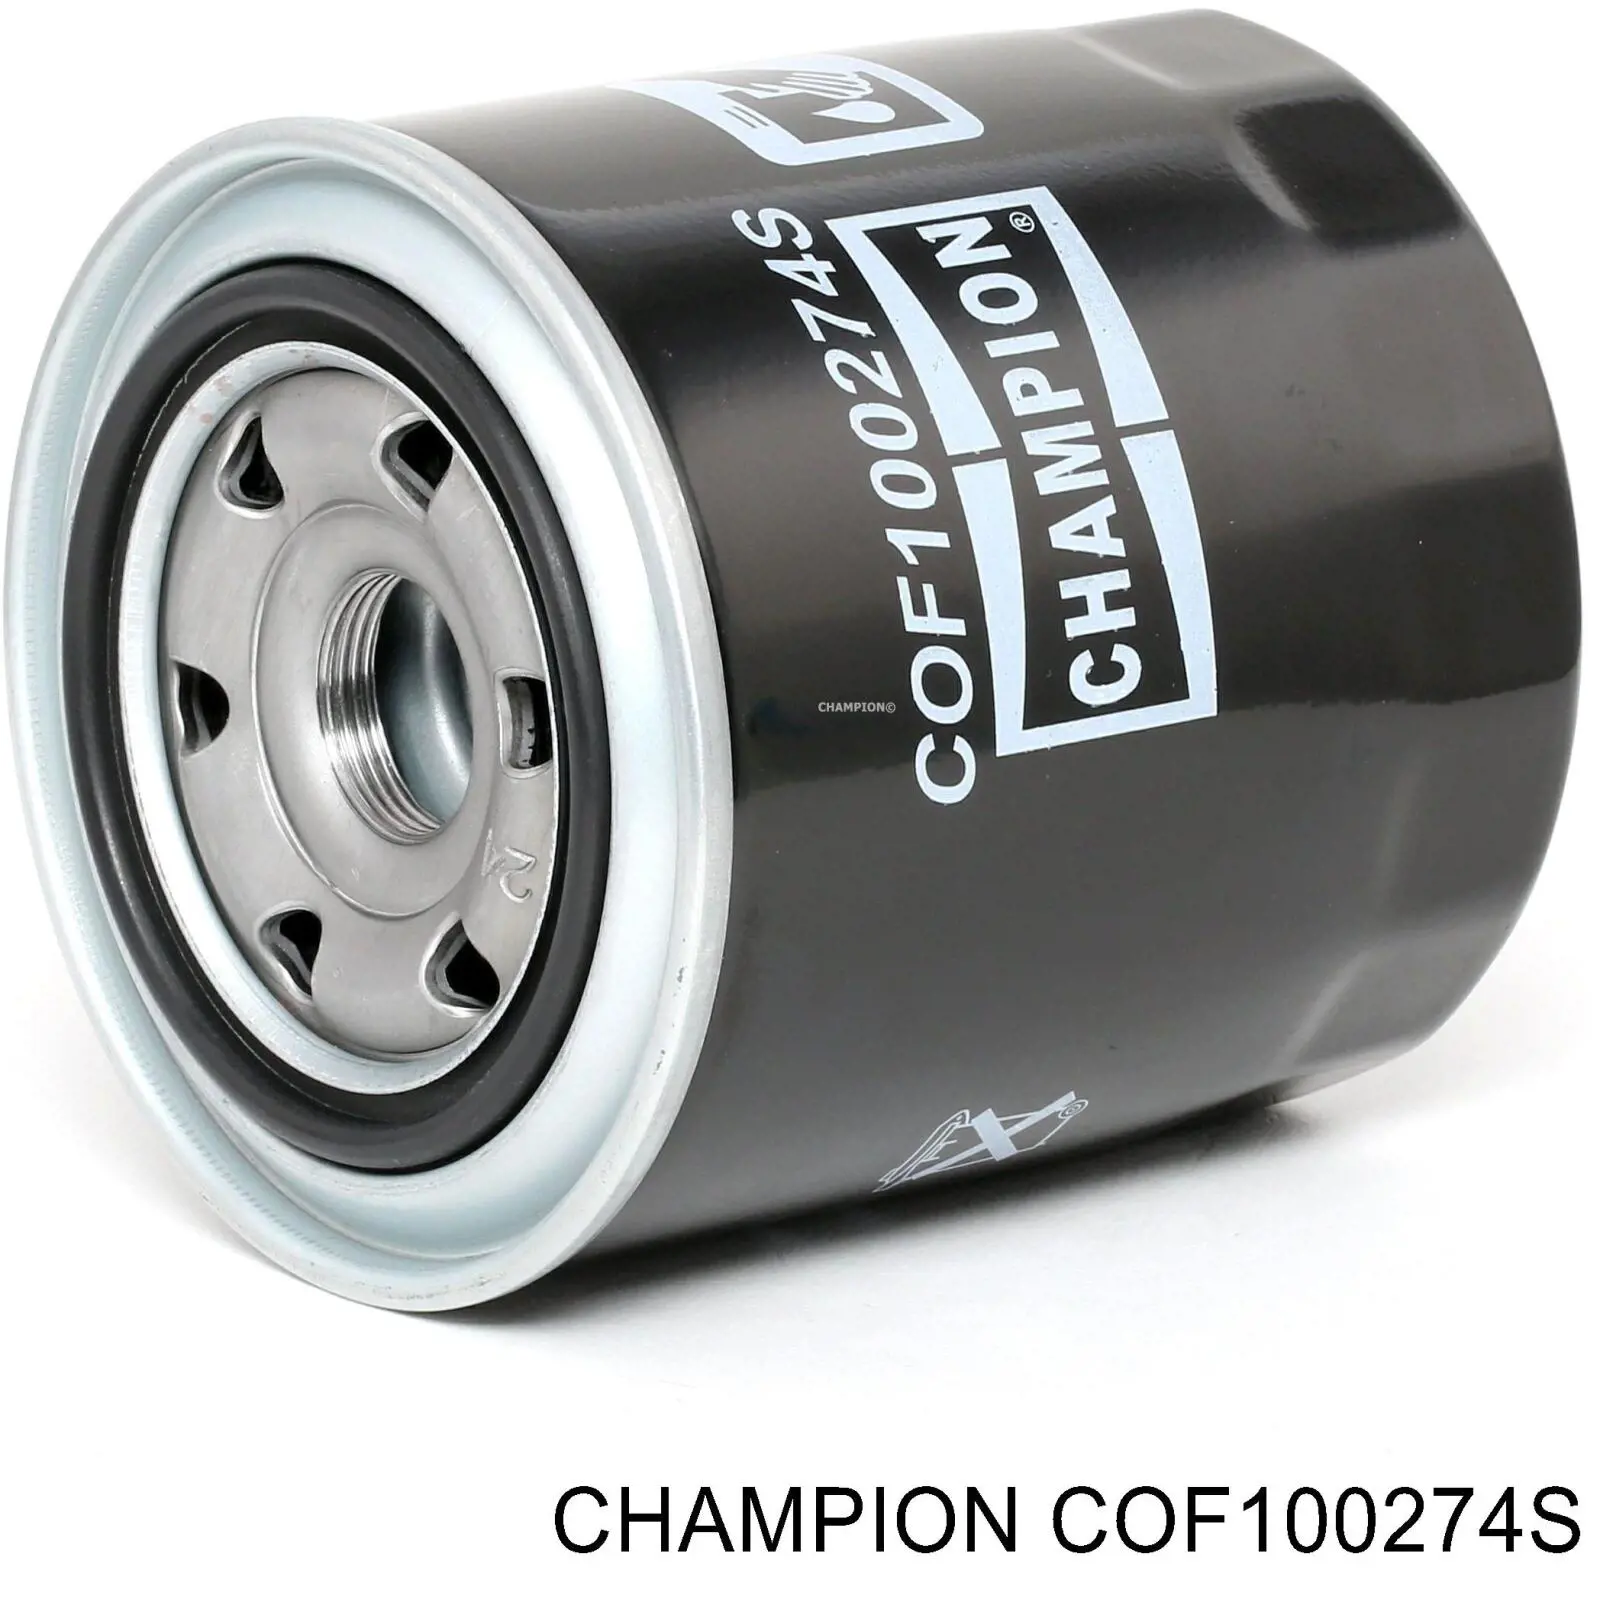 COF100274S Champion масляный фильтр